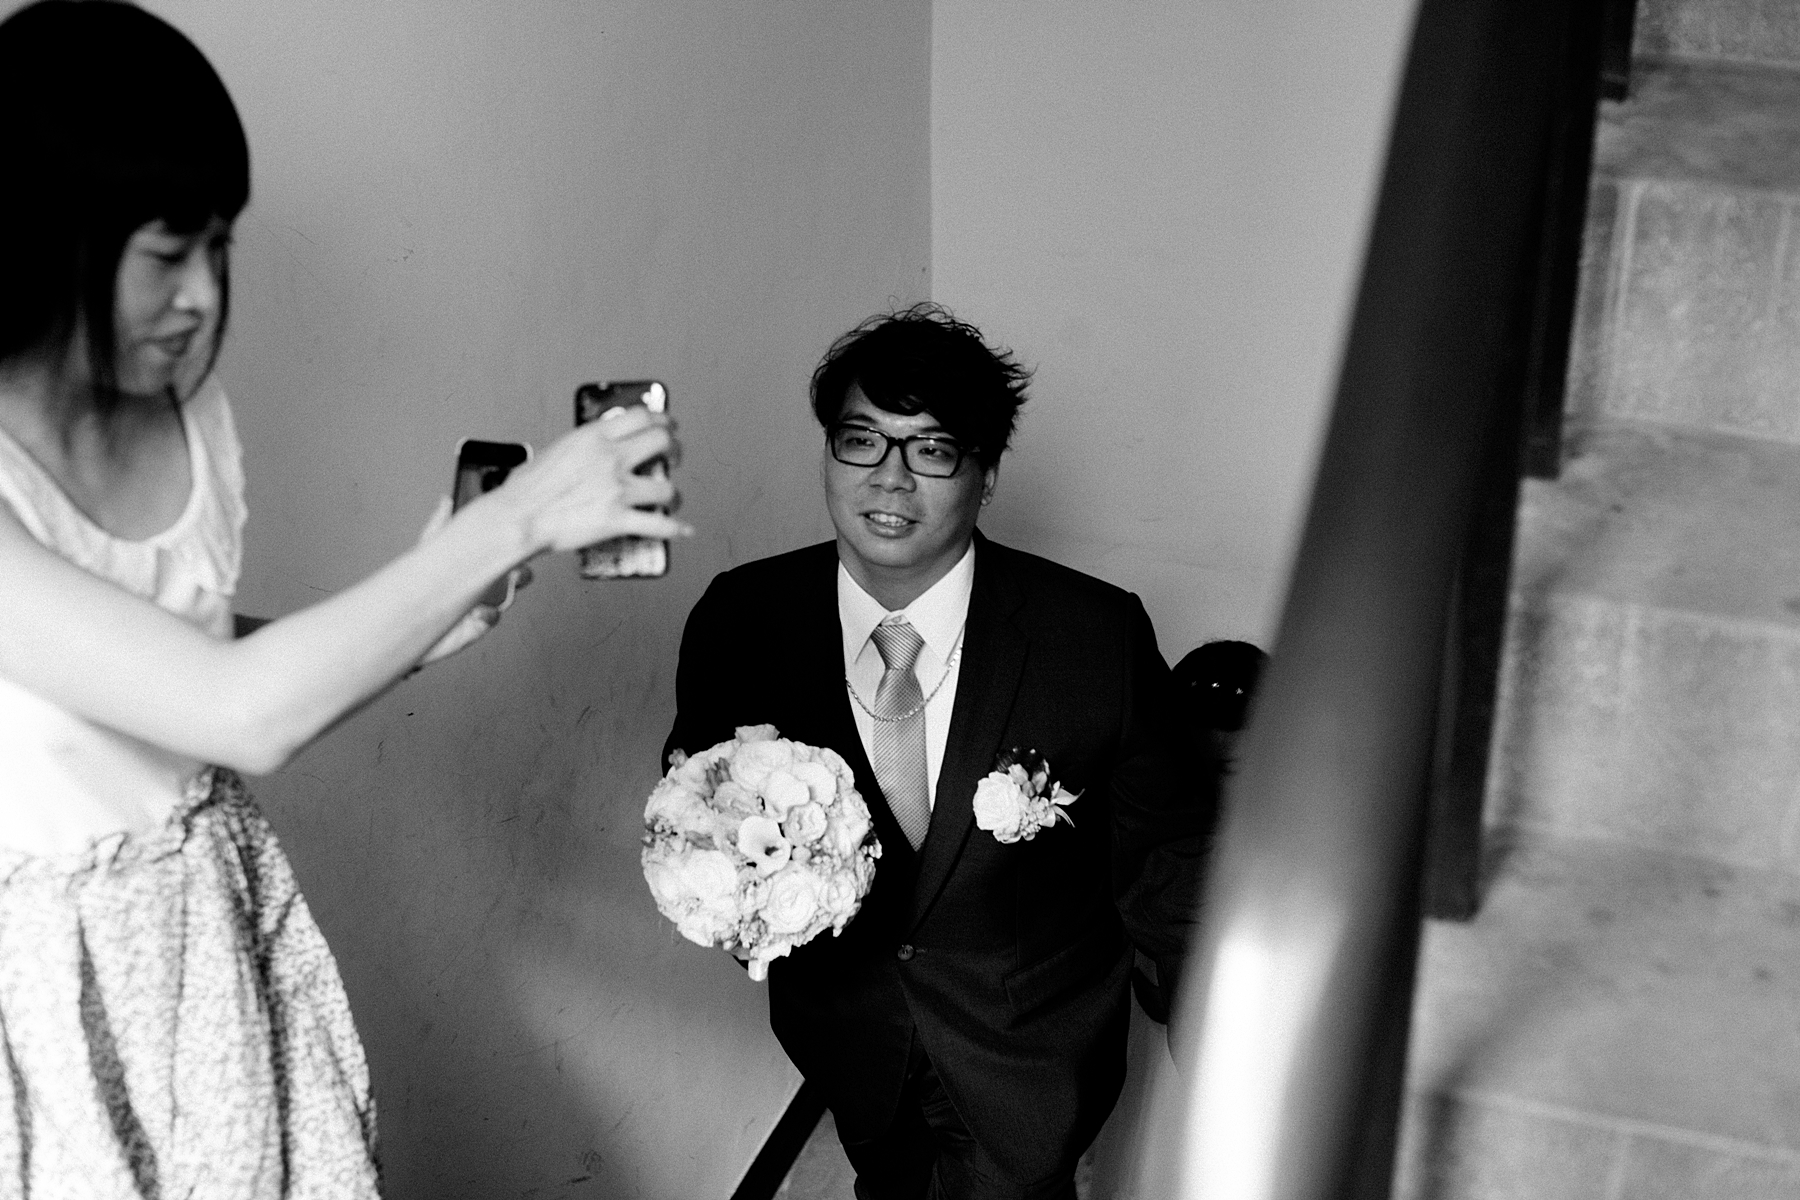 婚禮攝影,婚攝,婚禮記錄,台北,儷宴會館東光館,底片風格,自然